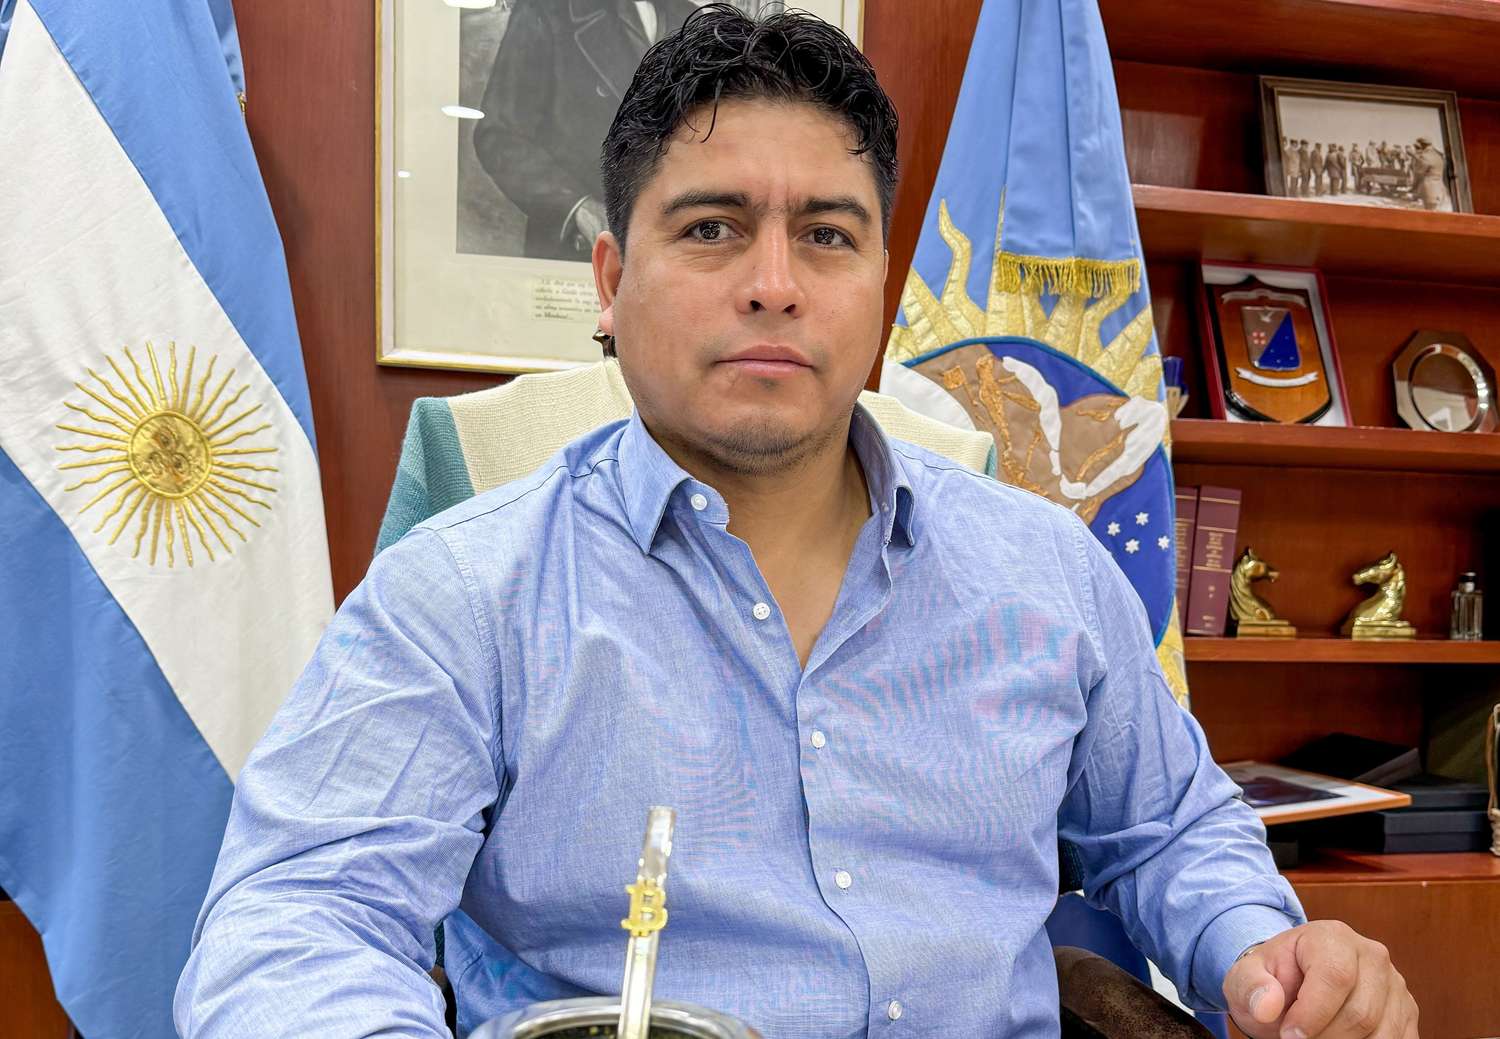 El gobernador de Santa Cruz, Claudio Vidal, advirtió que sus legisladores "no van a acompañar ningún tipo de Ley Bases".